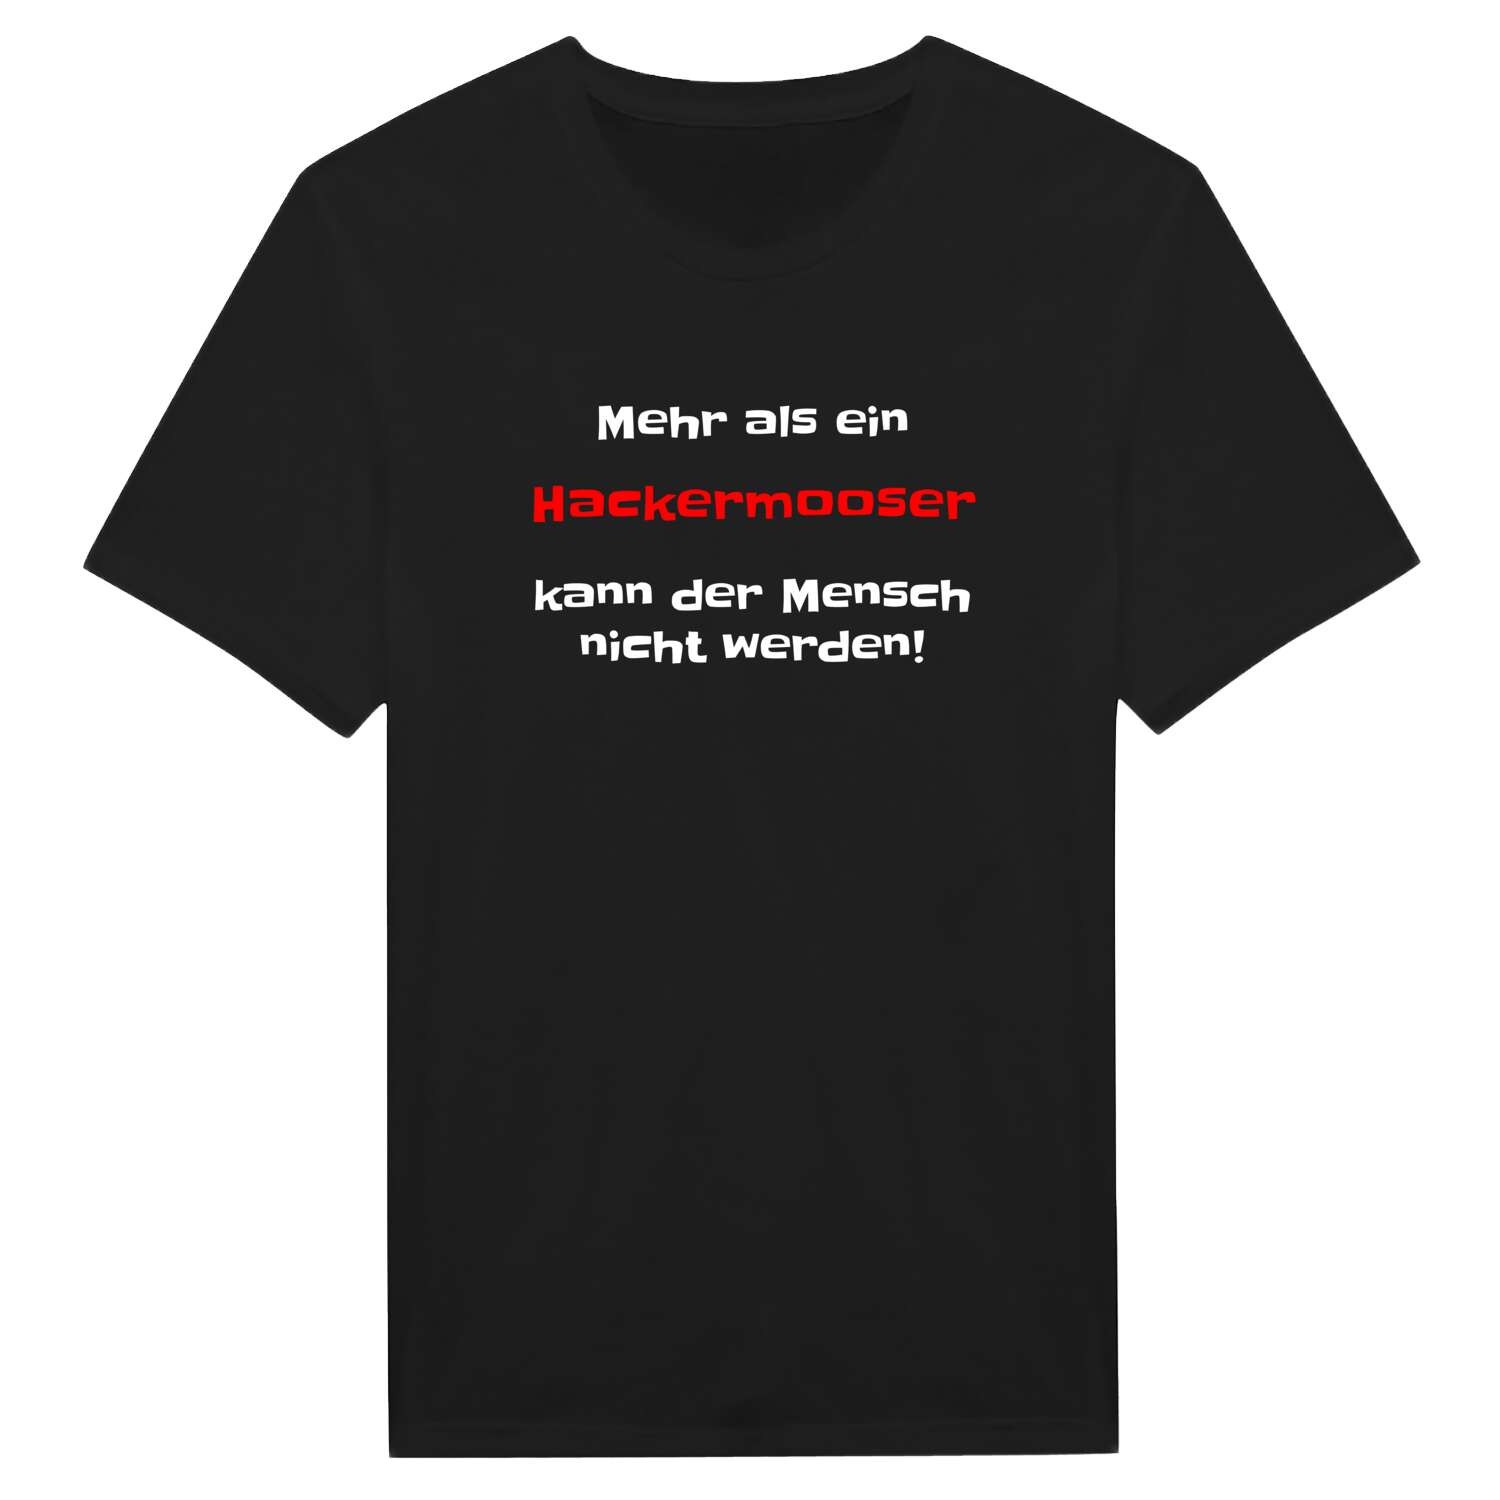 Hackermoos T-Shirt »Mehr als ein«